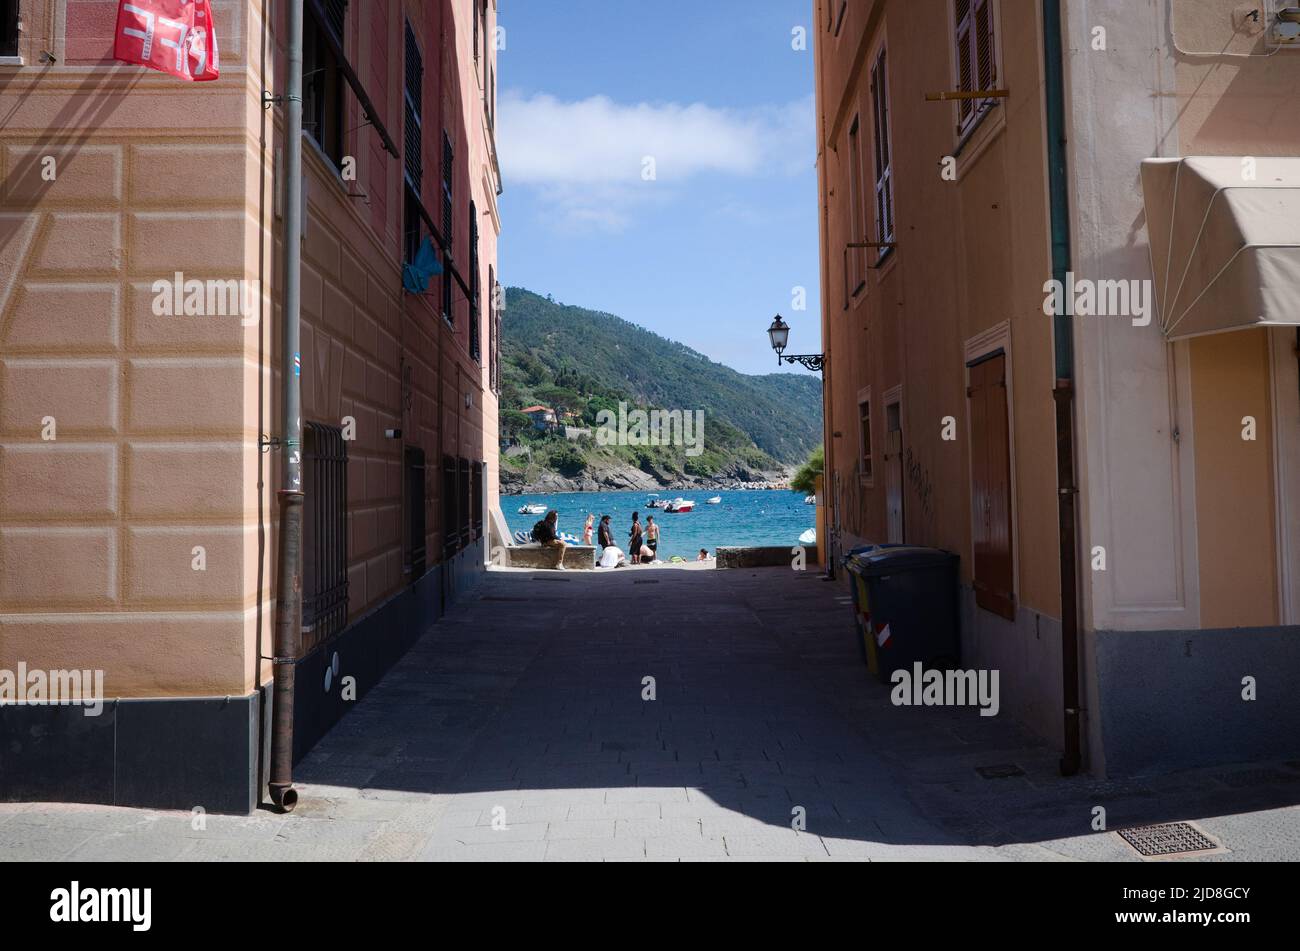 Sestri Levante, Liguria, Italy - April, 2022: Access to sea, beach and Baia del Silenzio bay through narrow passage between two residential buildings Stock Photo